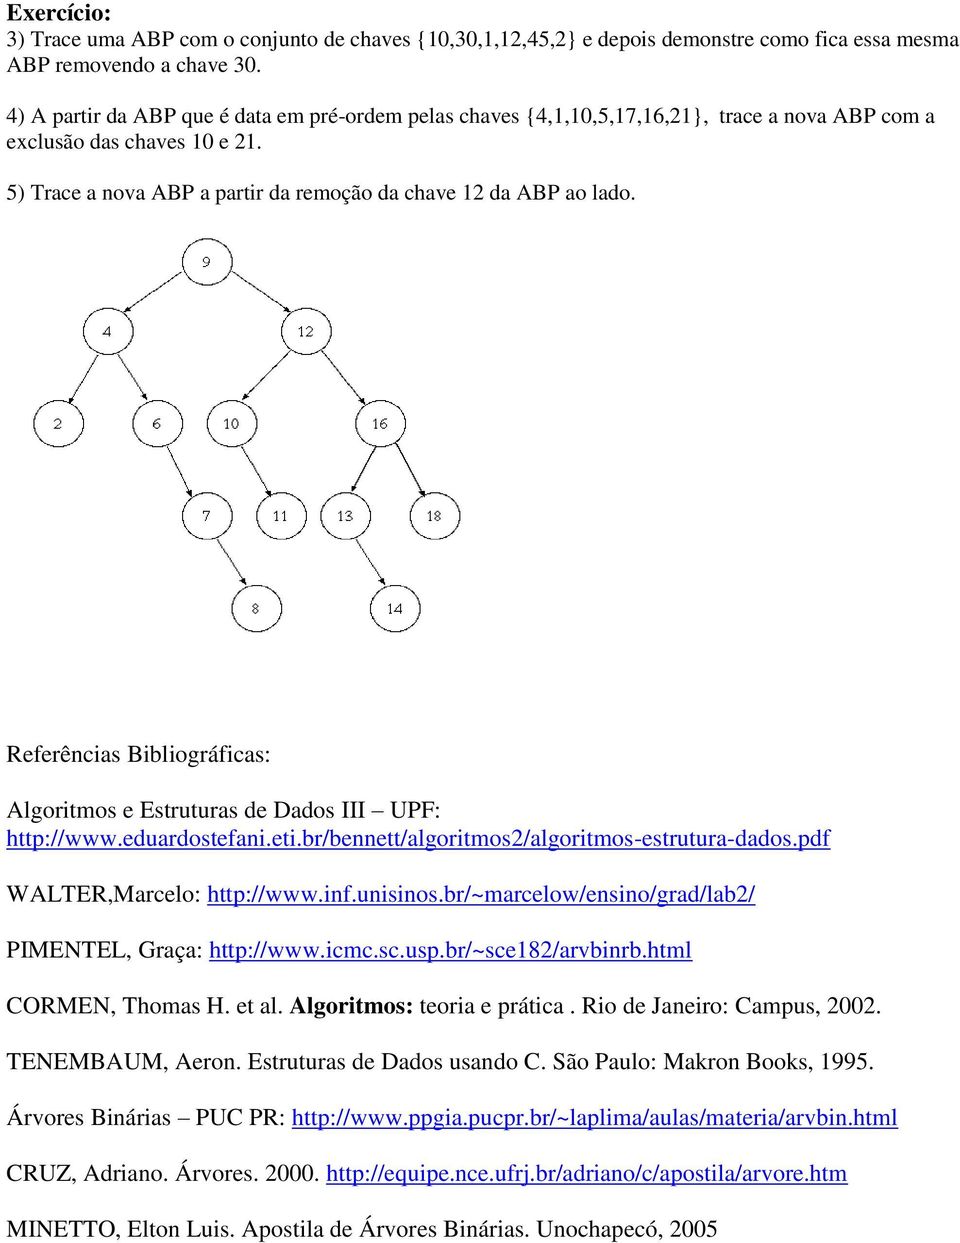 Referências Bibliográficas: Algoritmos e Estruturas de Dados III UPF: http://www.eduardostefani.eti.br/bennett/algoritmos2/algoritmos-estrutura-dados.pdf WALTER,Marcelo: http://www.inf.unisinos.